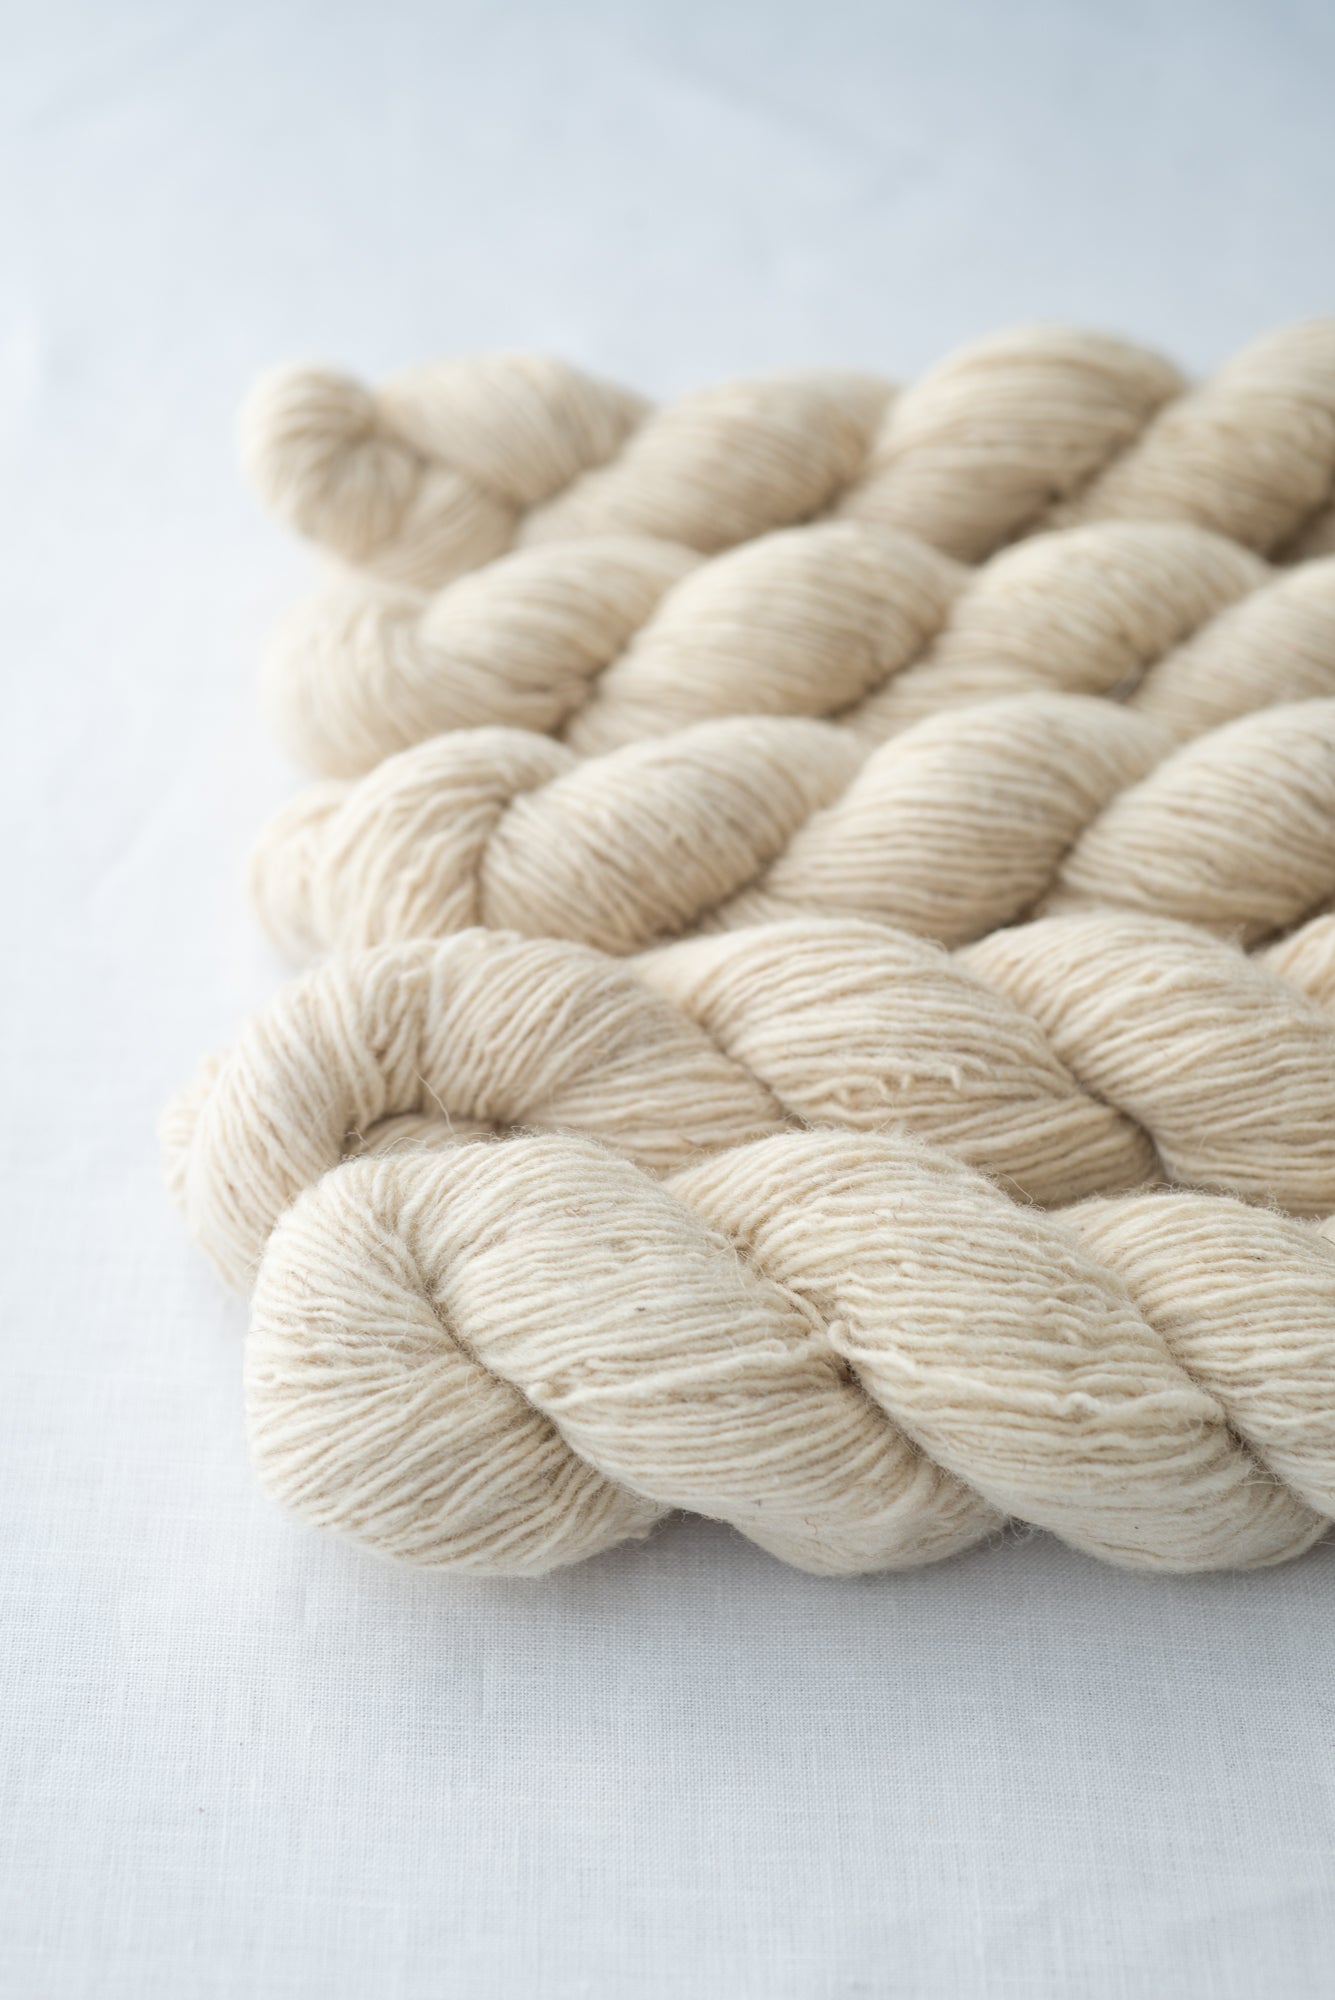 wool making